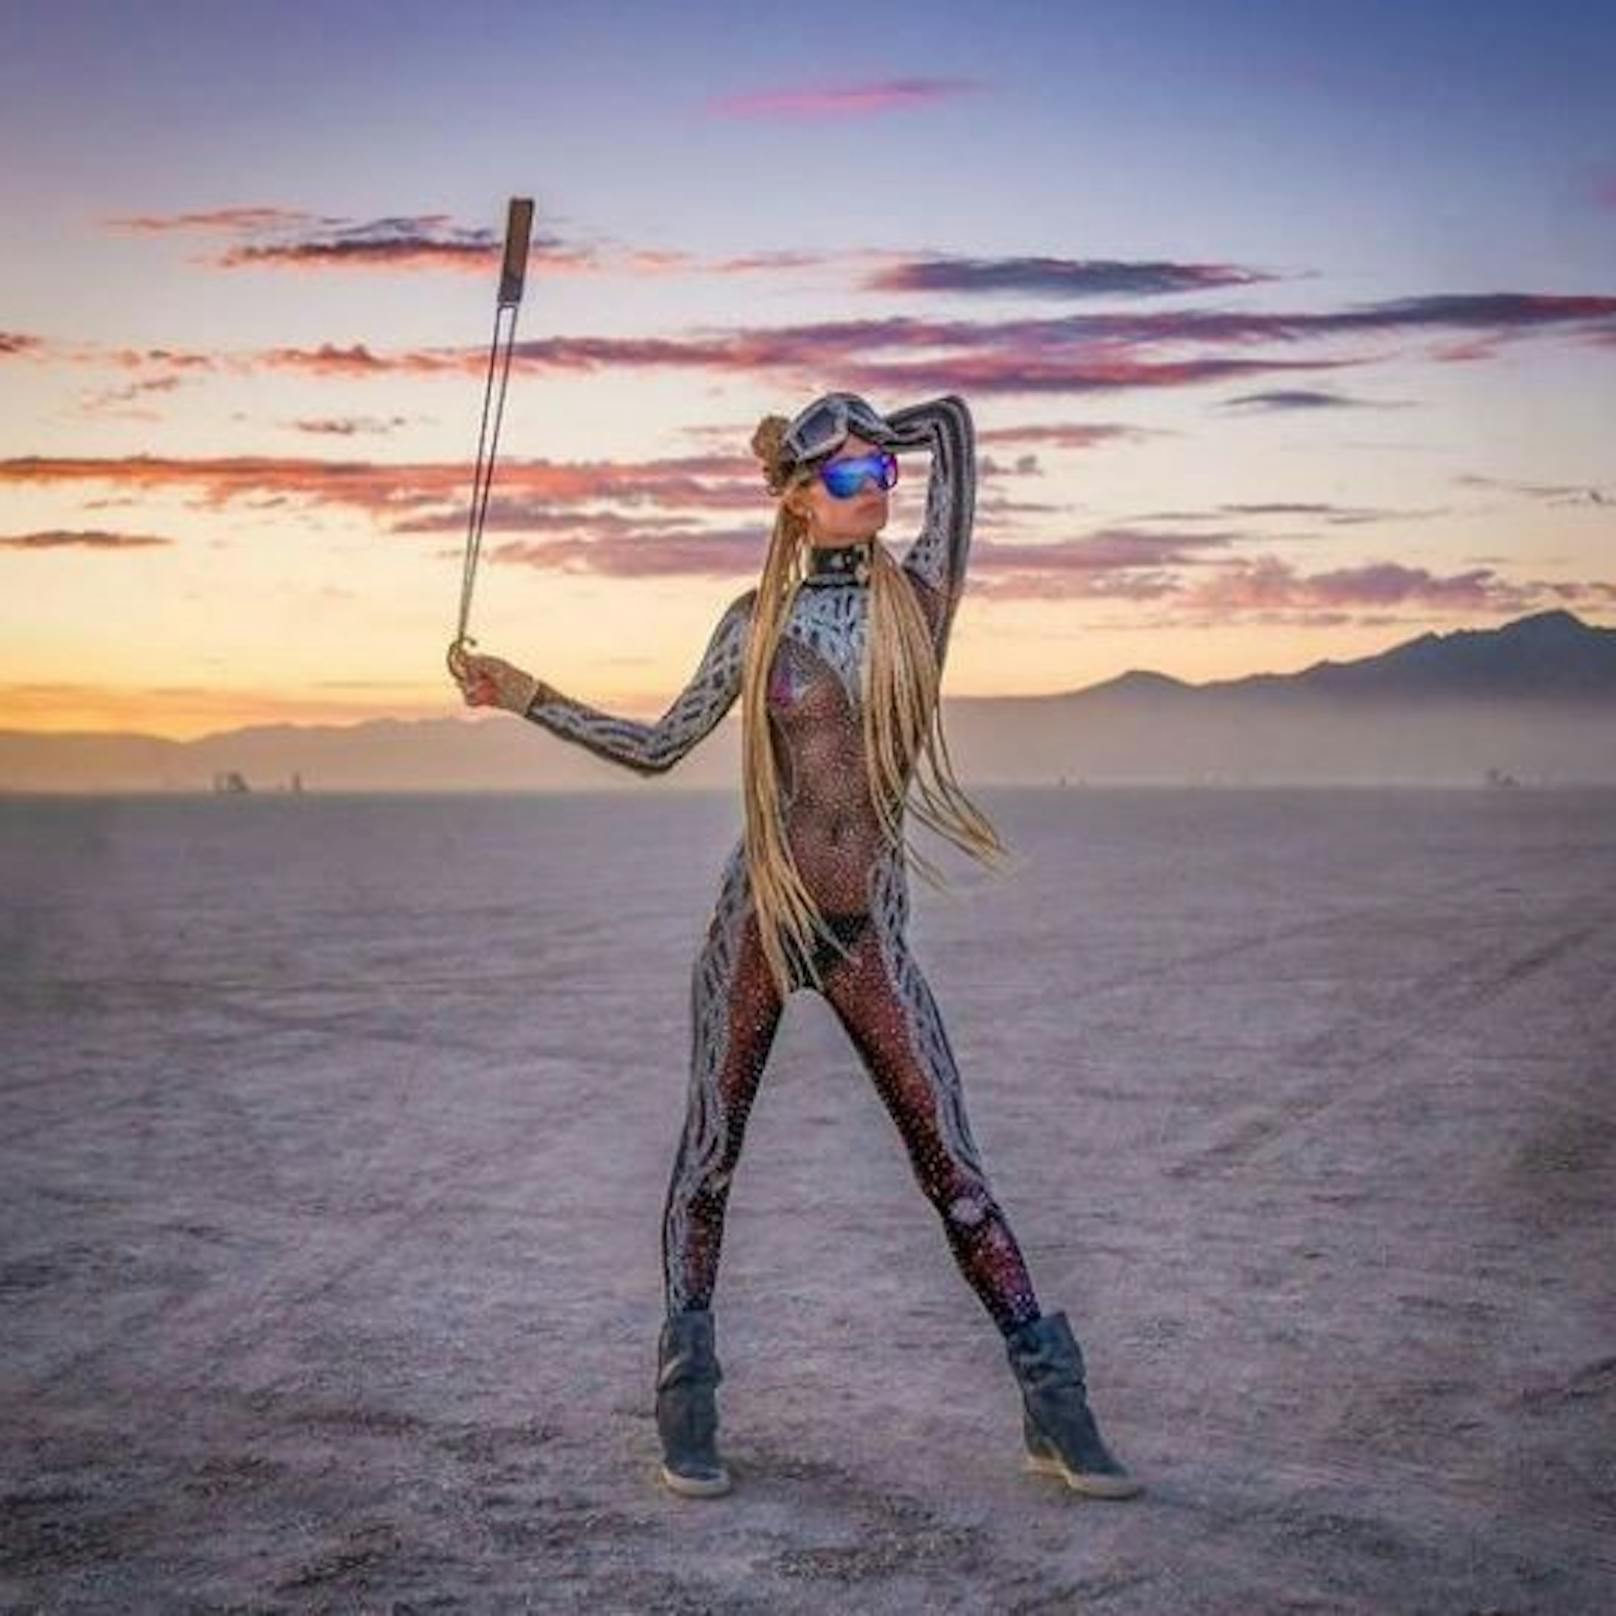 Offiziell fand das Burning Man Festival 2021 nur online statt. Trotzdem feierten 30.000 Menschen privat in der Wüste von Nevada, darunter Paris Hilton.